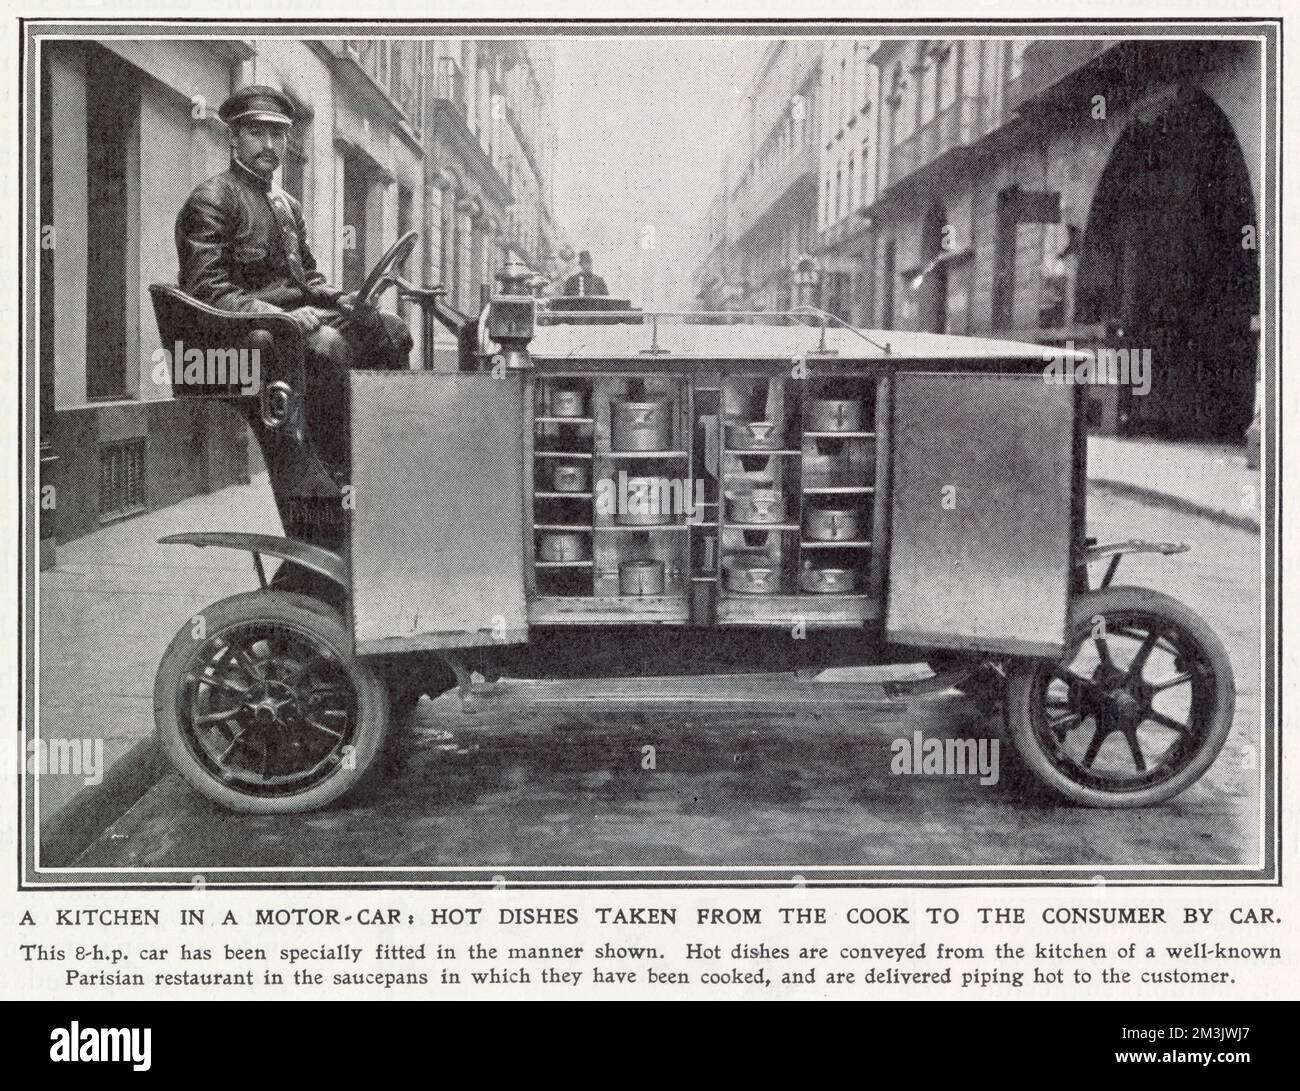 Un'auto elettrica a otto cavalli utilizzata per trasportare pasti caldi da un famoso ristorante parigino a persone nelle loro case. Data: 1909 Foto Stock